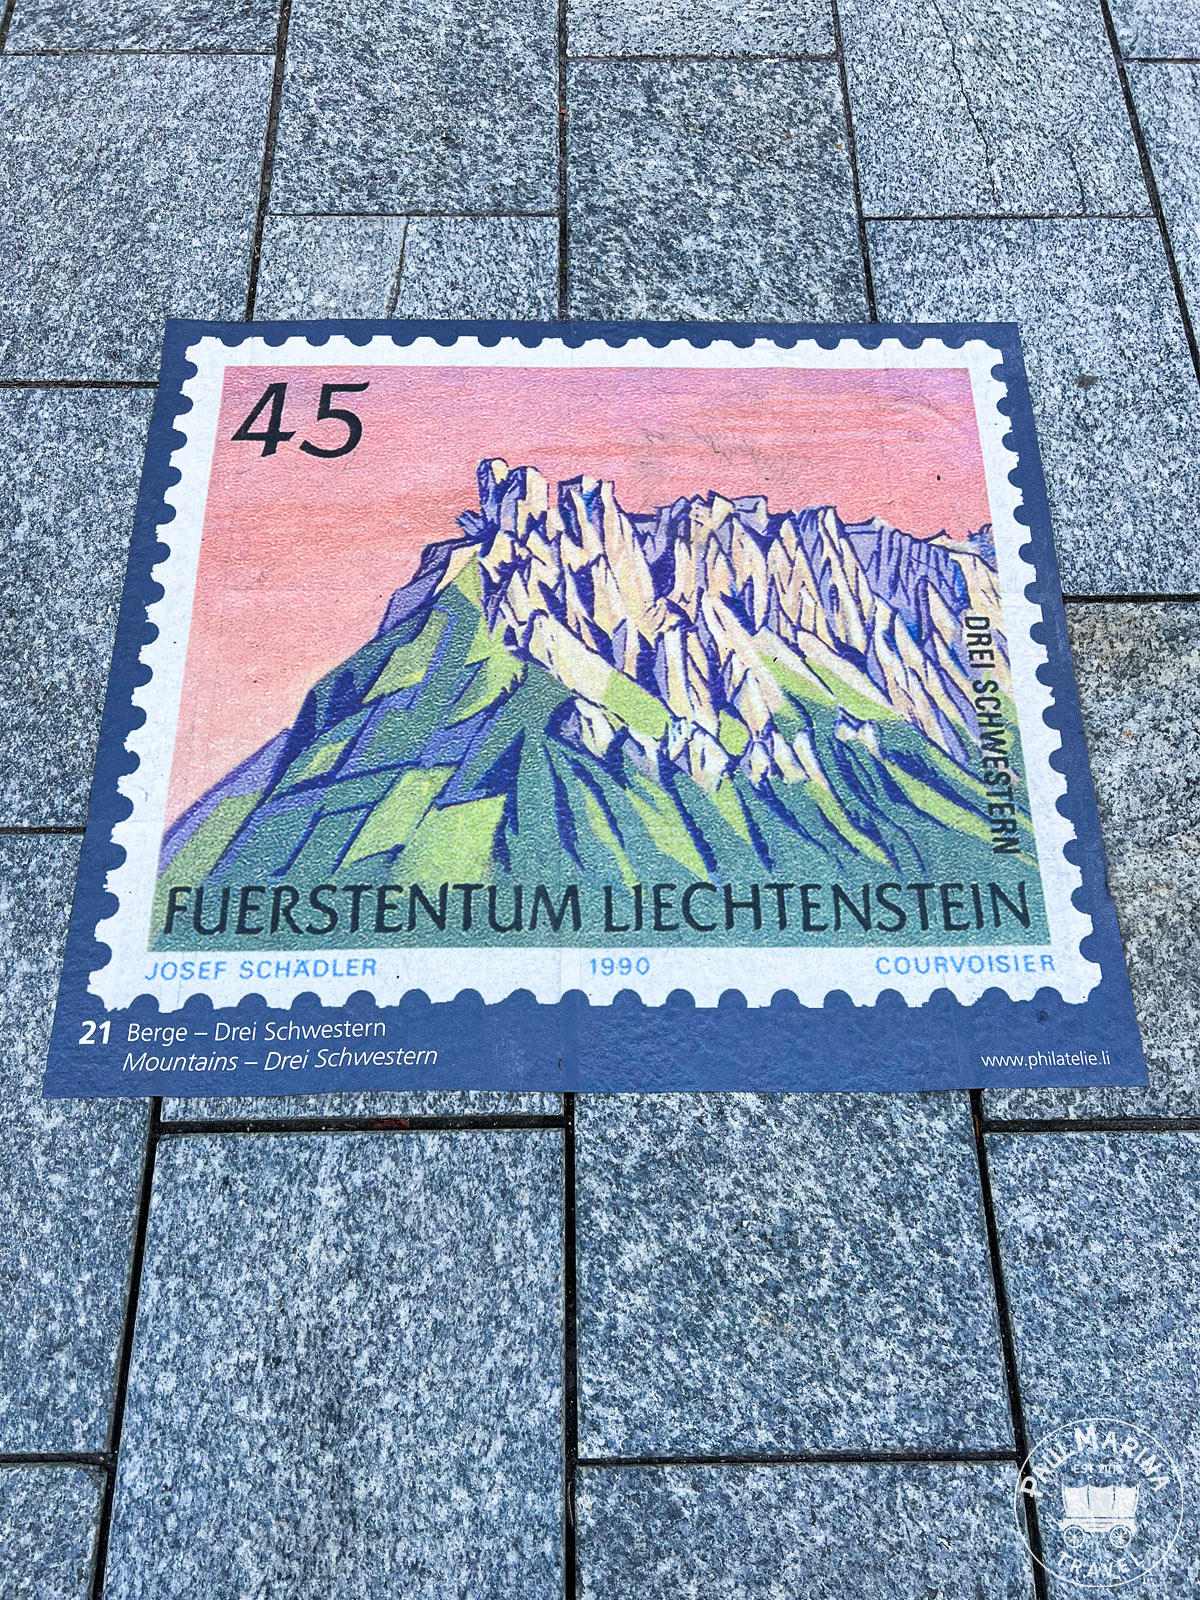 Street floor stamp showing the Drei Schwestern mountain summits